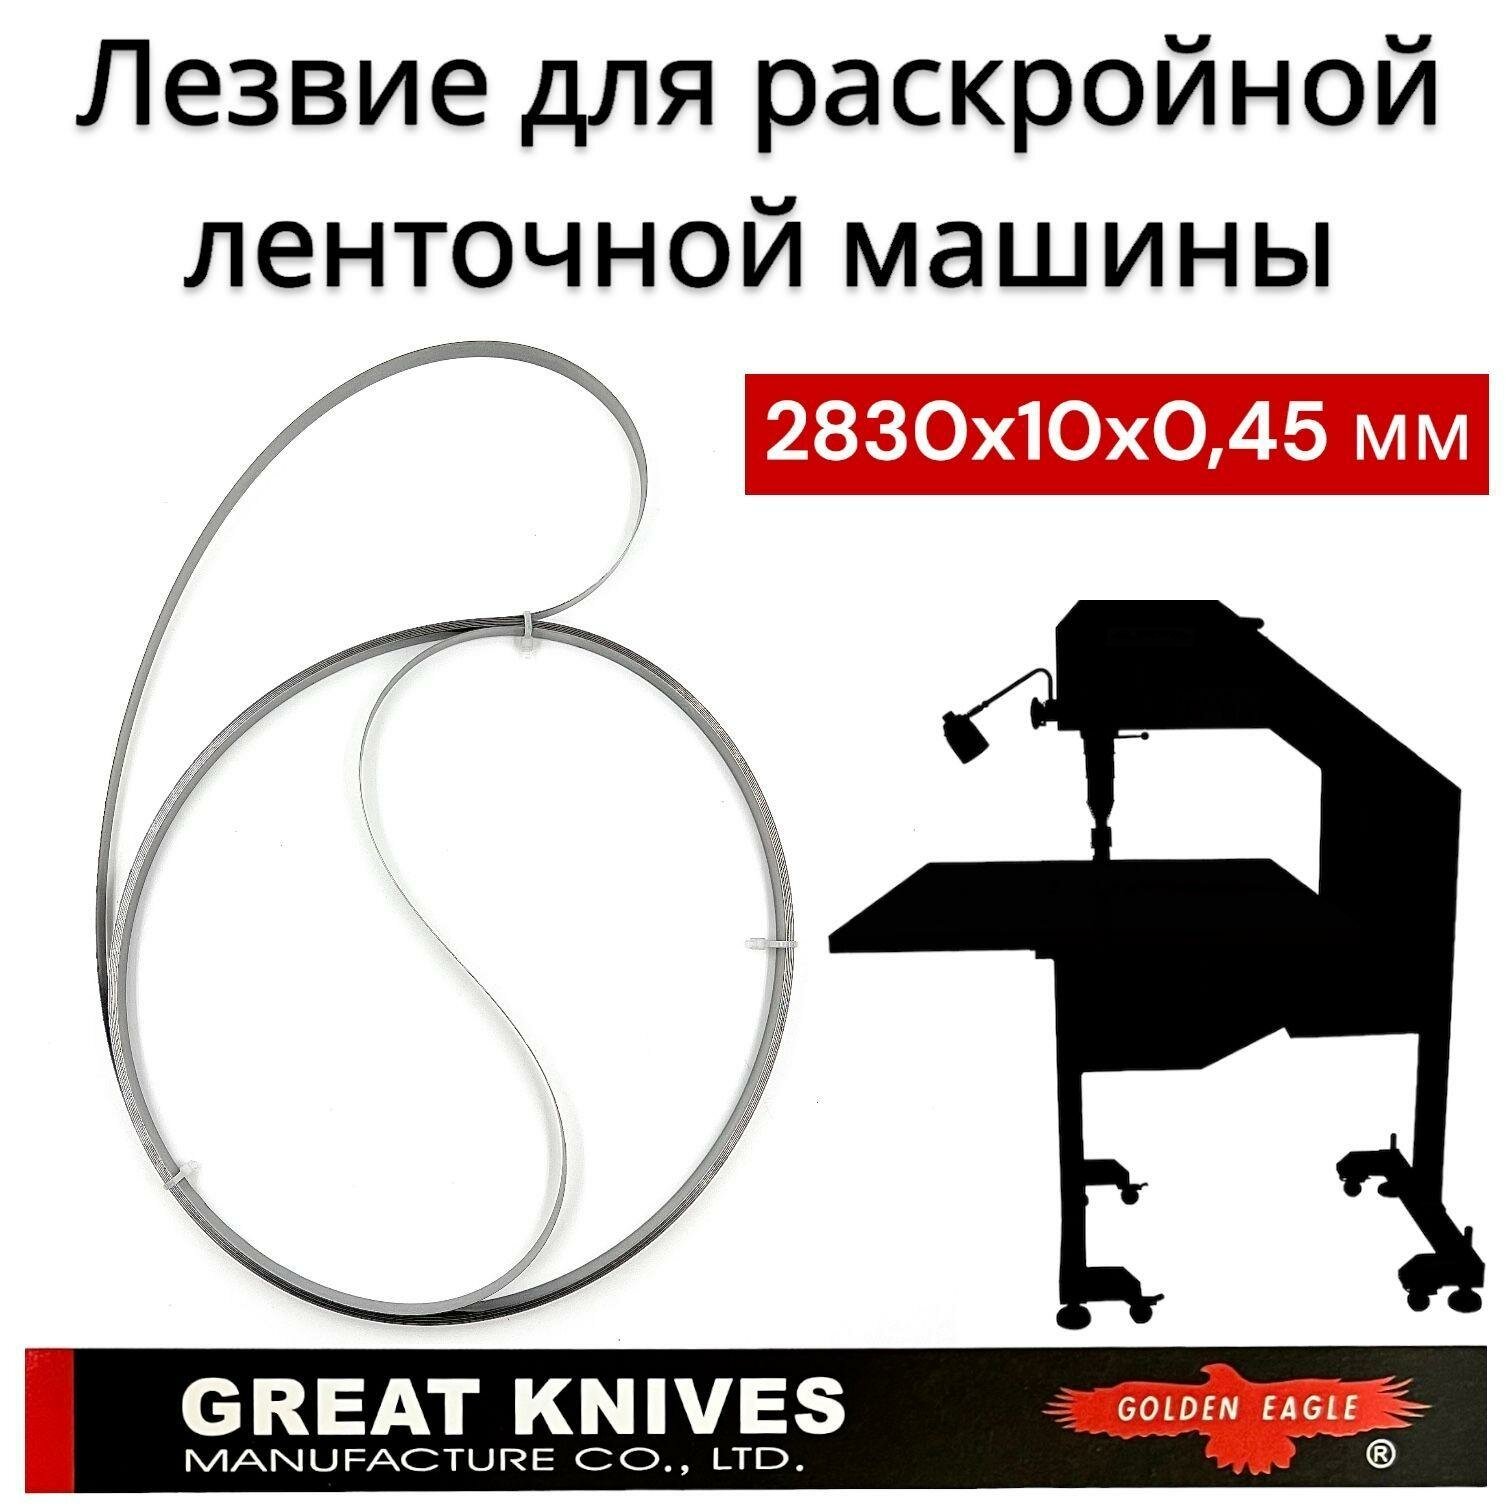 Лезвие для раскройного ленточного ножа 2830x10x0,45мм/ Golden Eagle